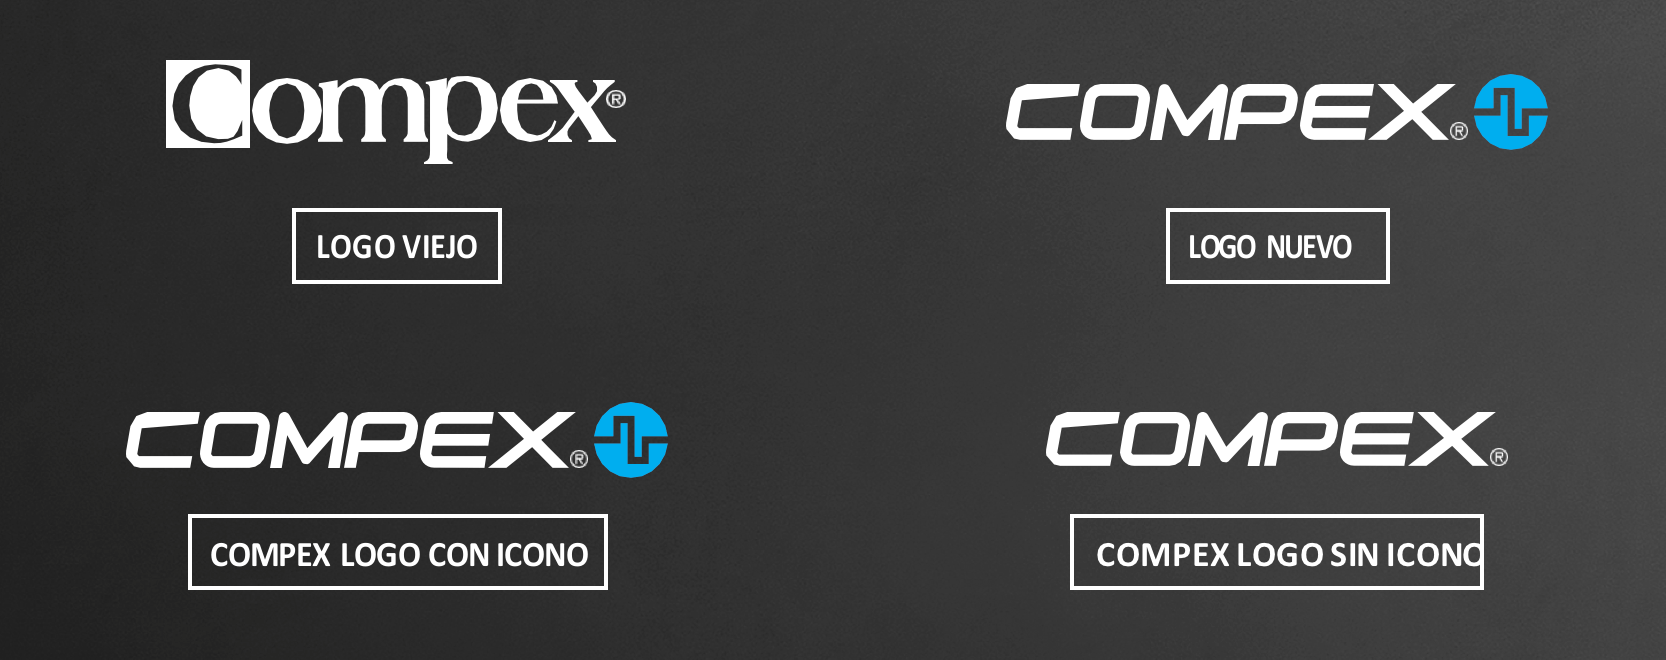 Änderungen im Compex-Logo